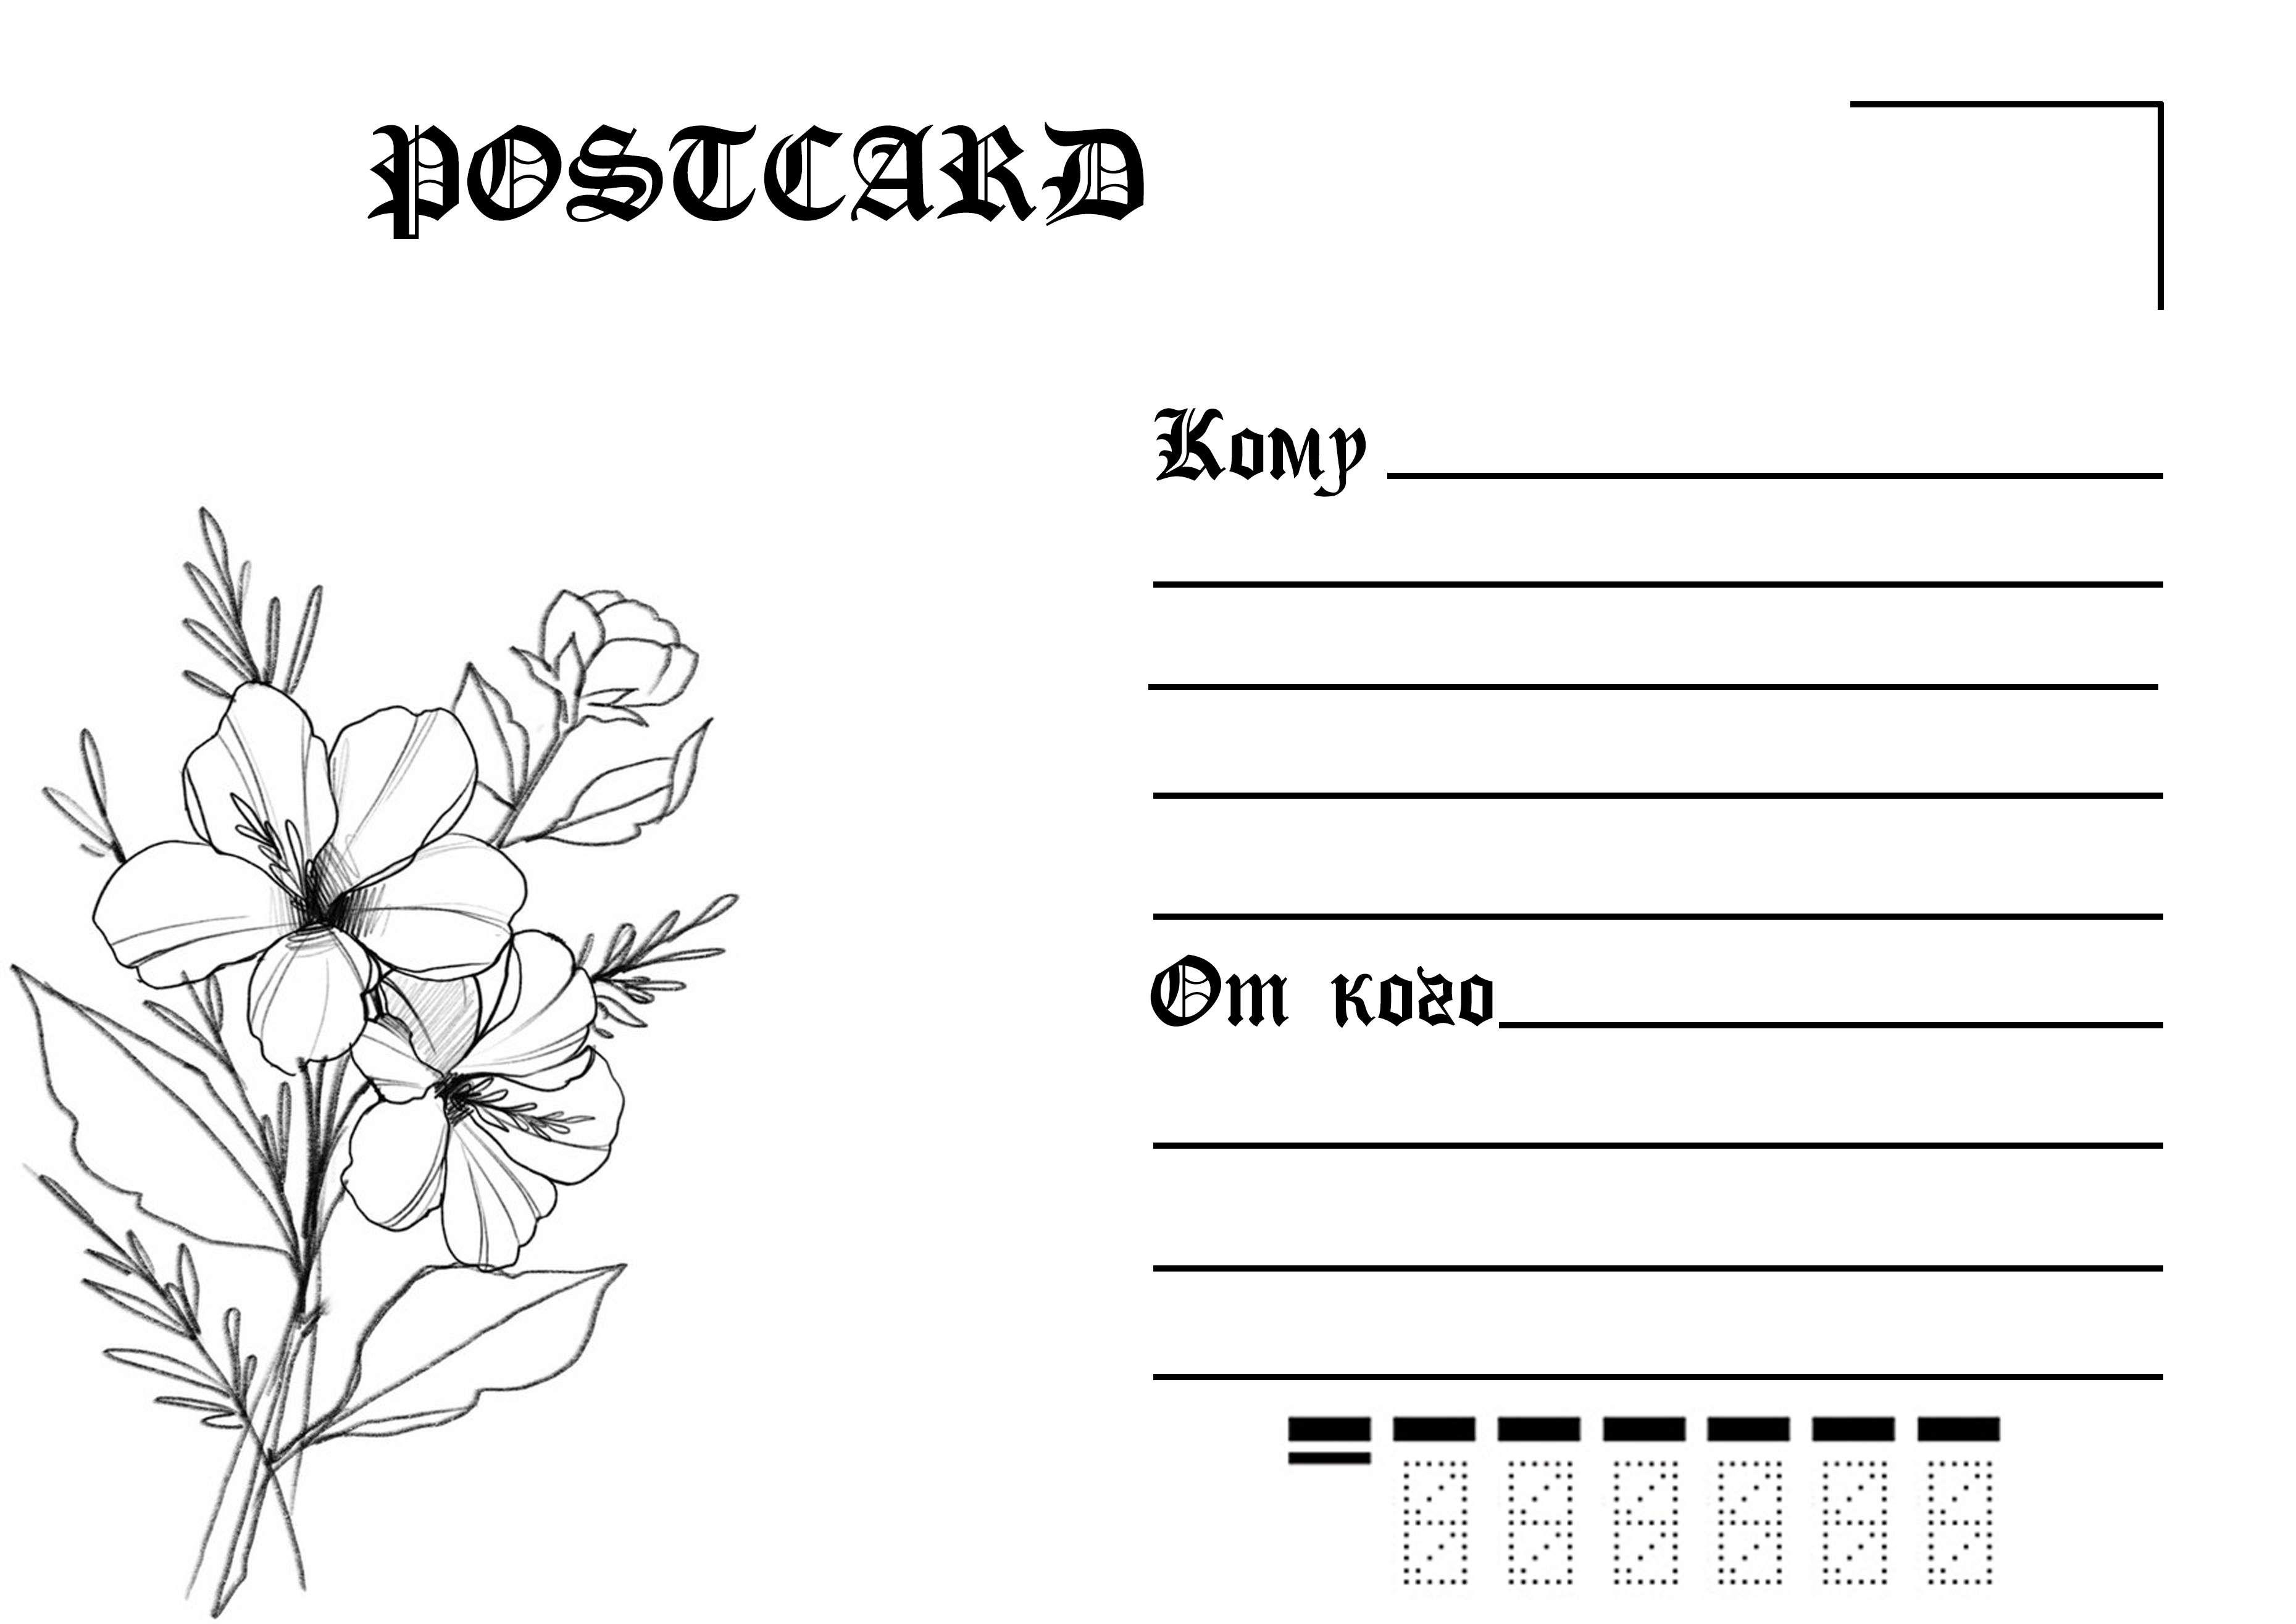 Обратная сторона почтовой открытки: скачать и распечатать шаблон